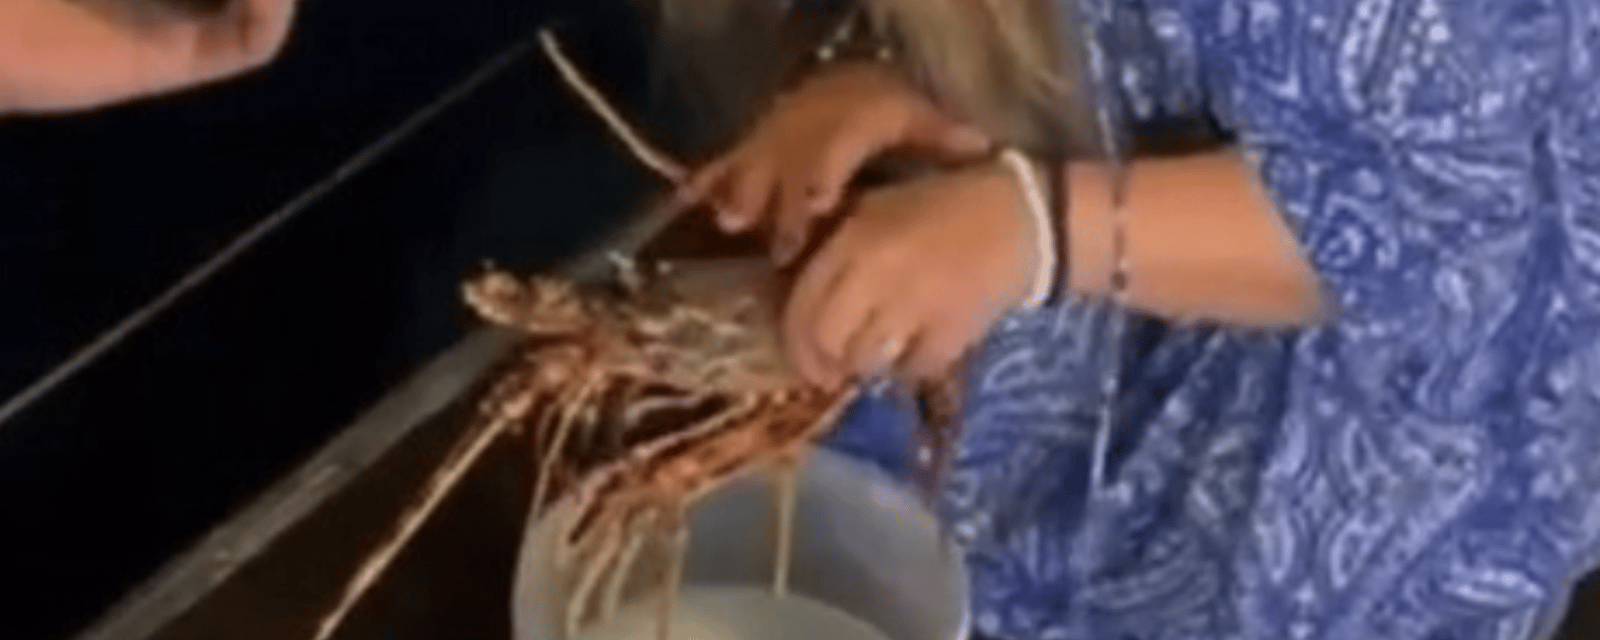 Une femme commande un homard de plus de 200$ pour aller le relâcher dans l'eau 